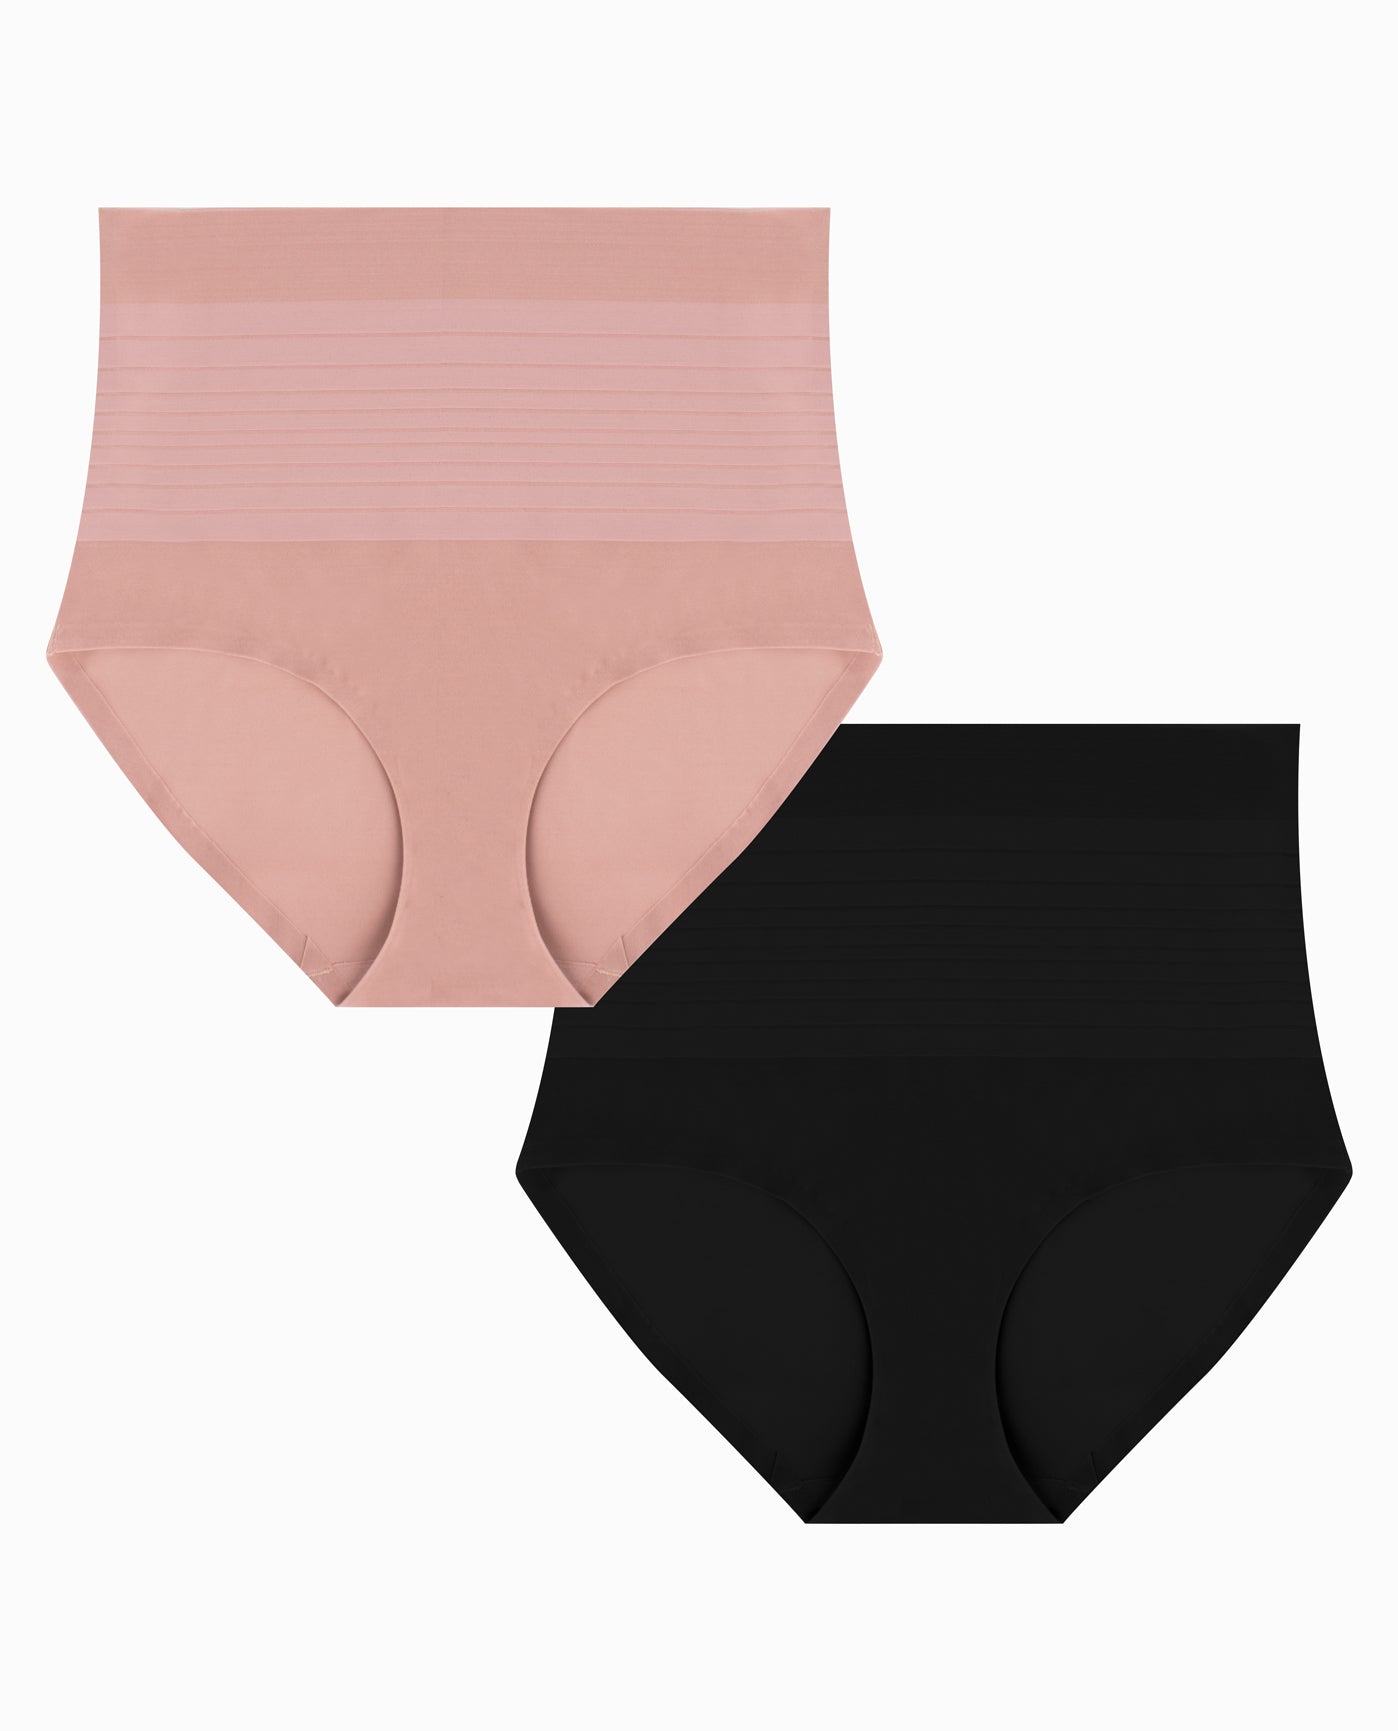 Women's Underwear in Blush